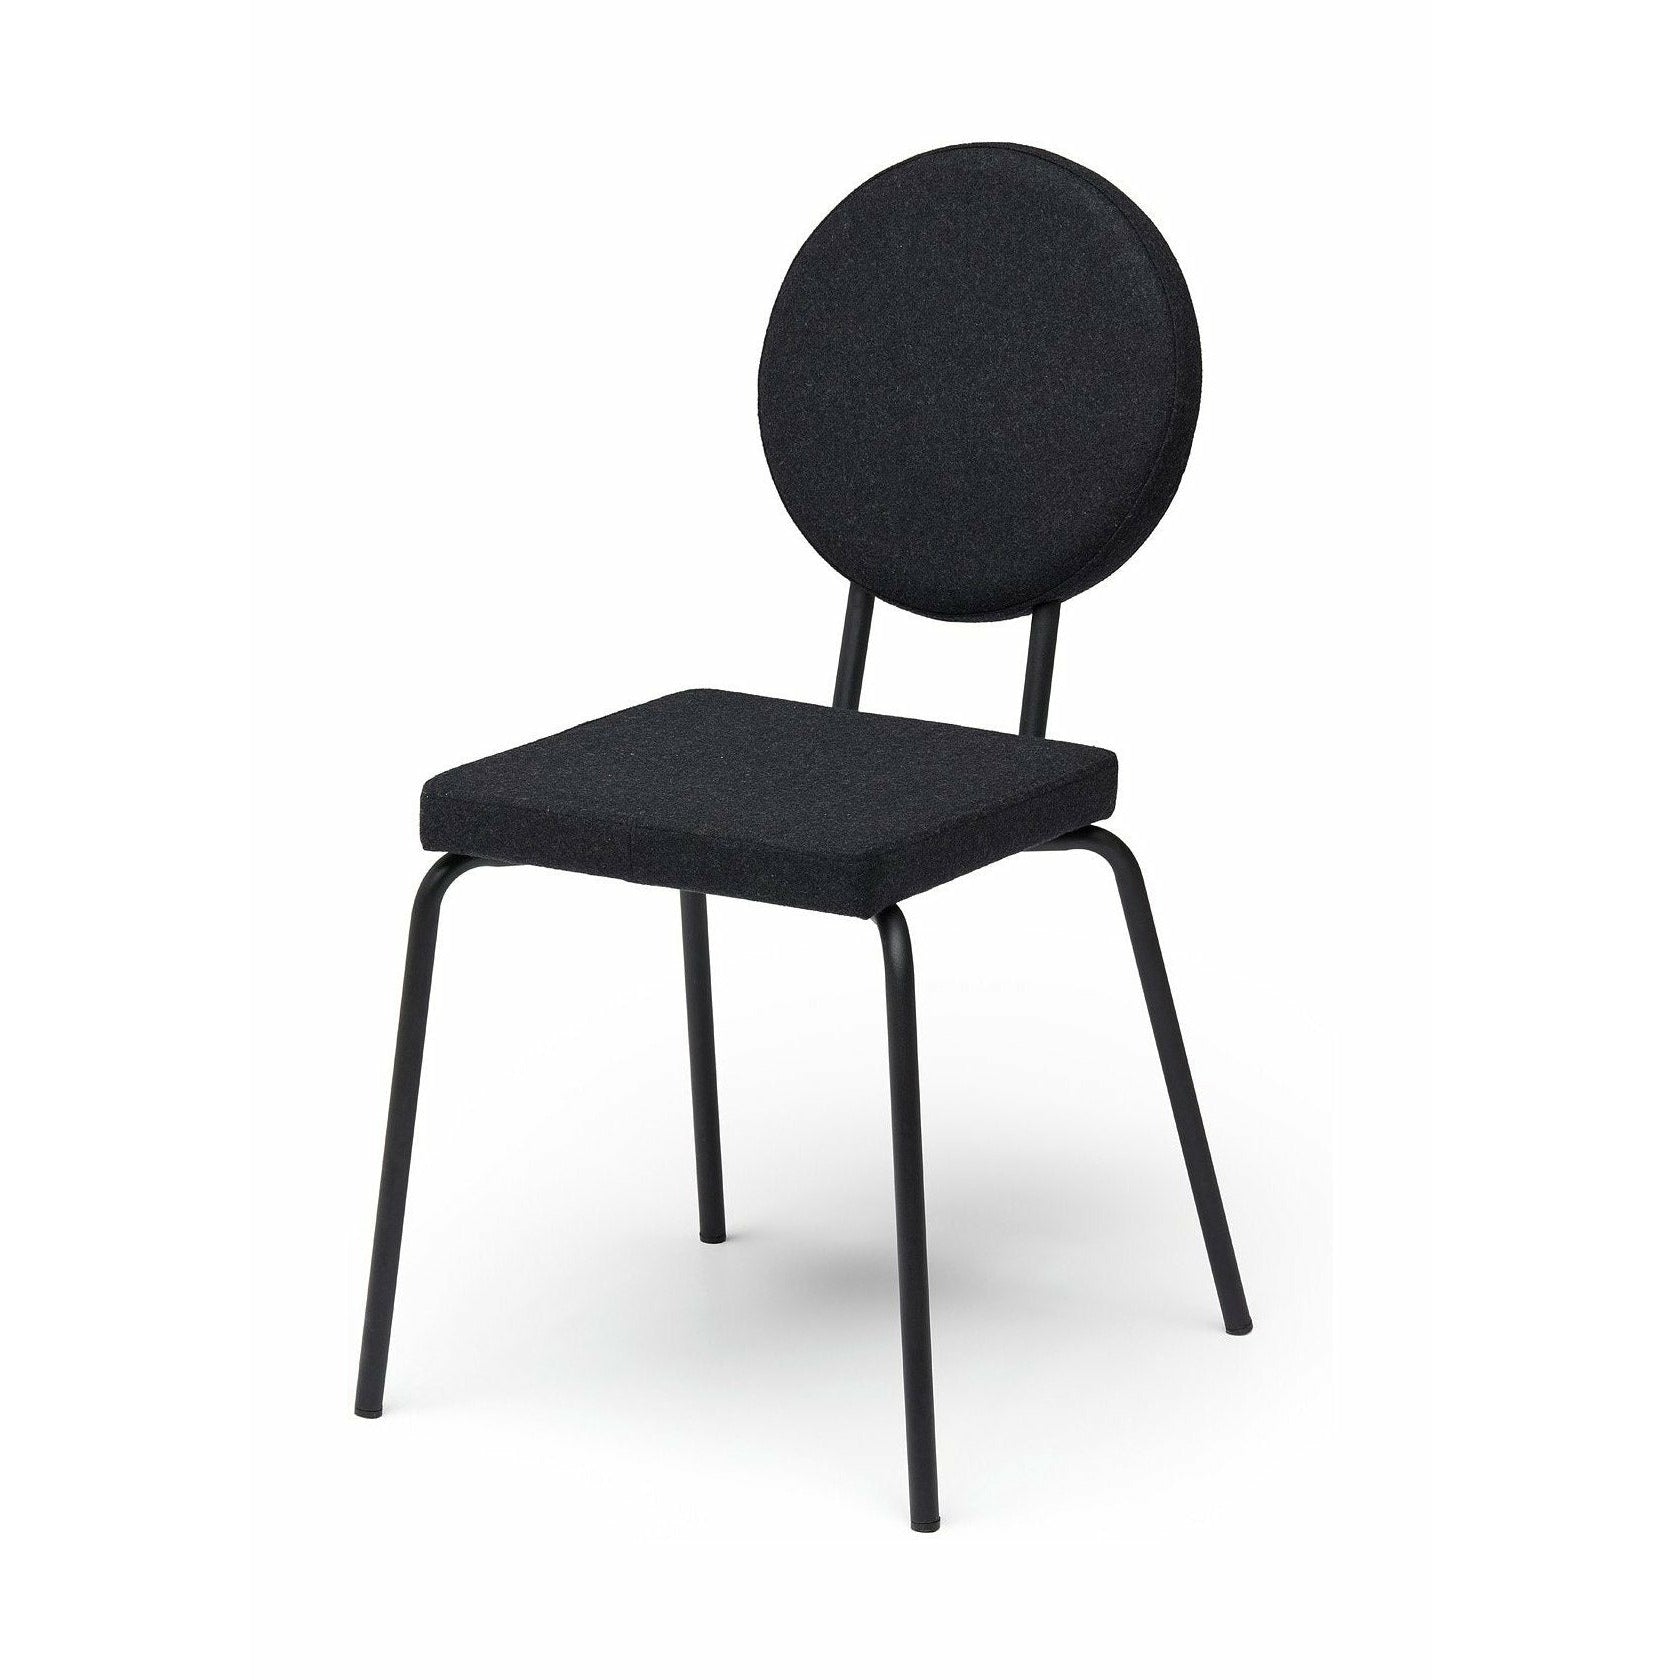 Sedia opzione puik sedile quadrato / backrest round, nero